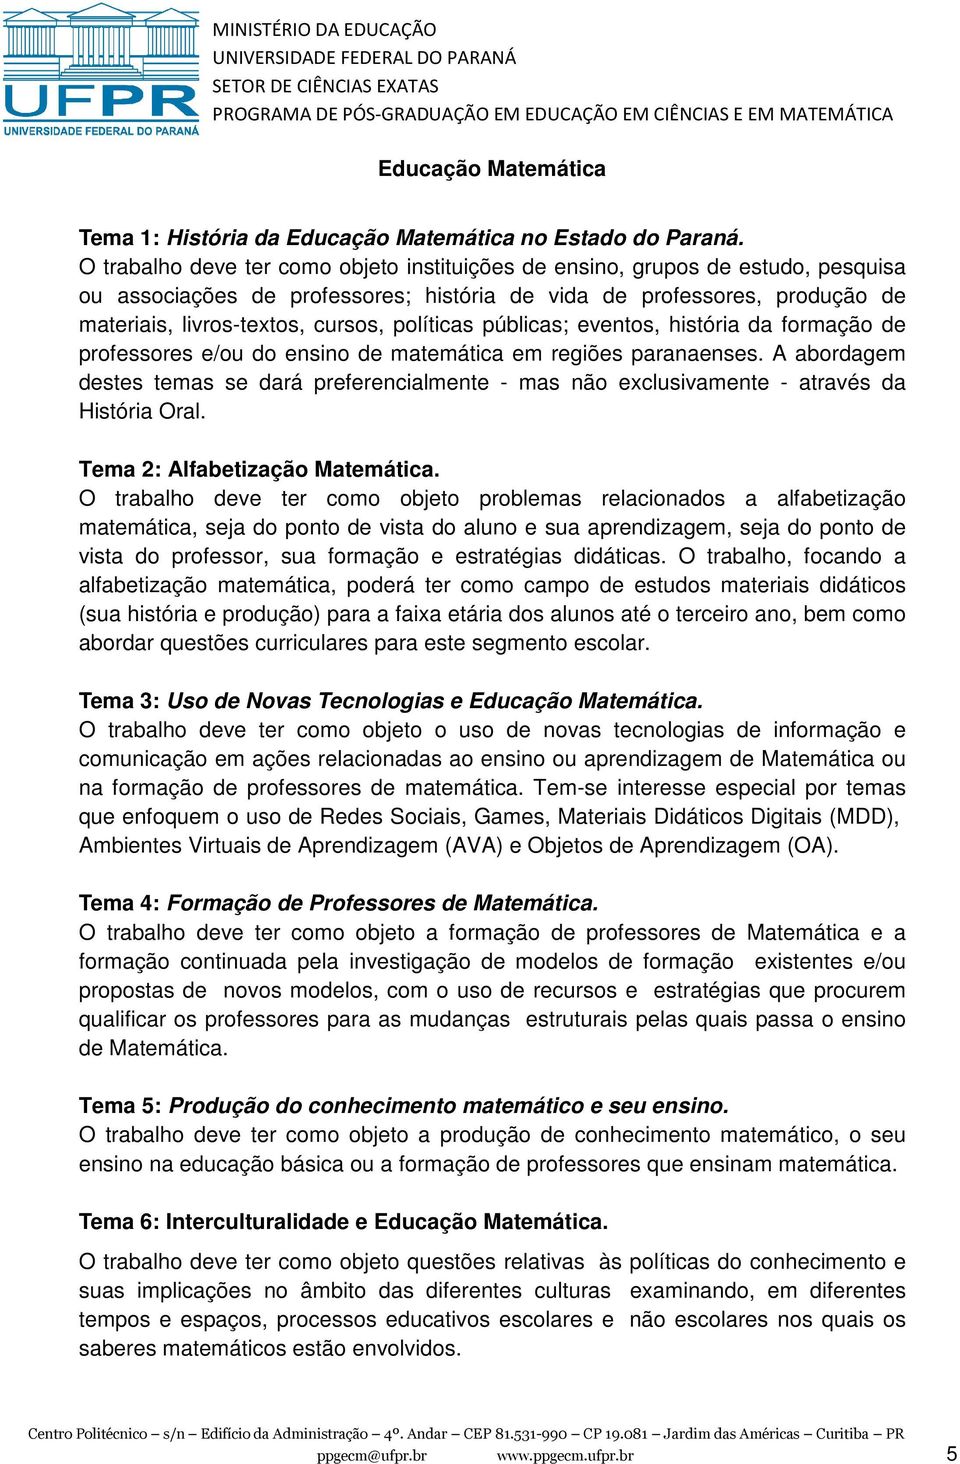 políticas públicas; eventos, história da formação de professores e/ou do ensino de matemática em regiões paranaenses.